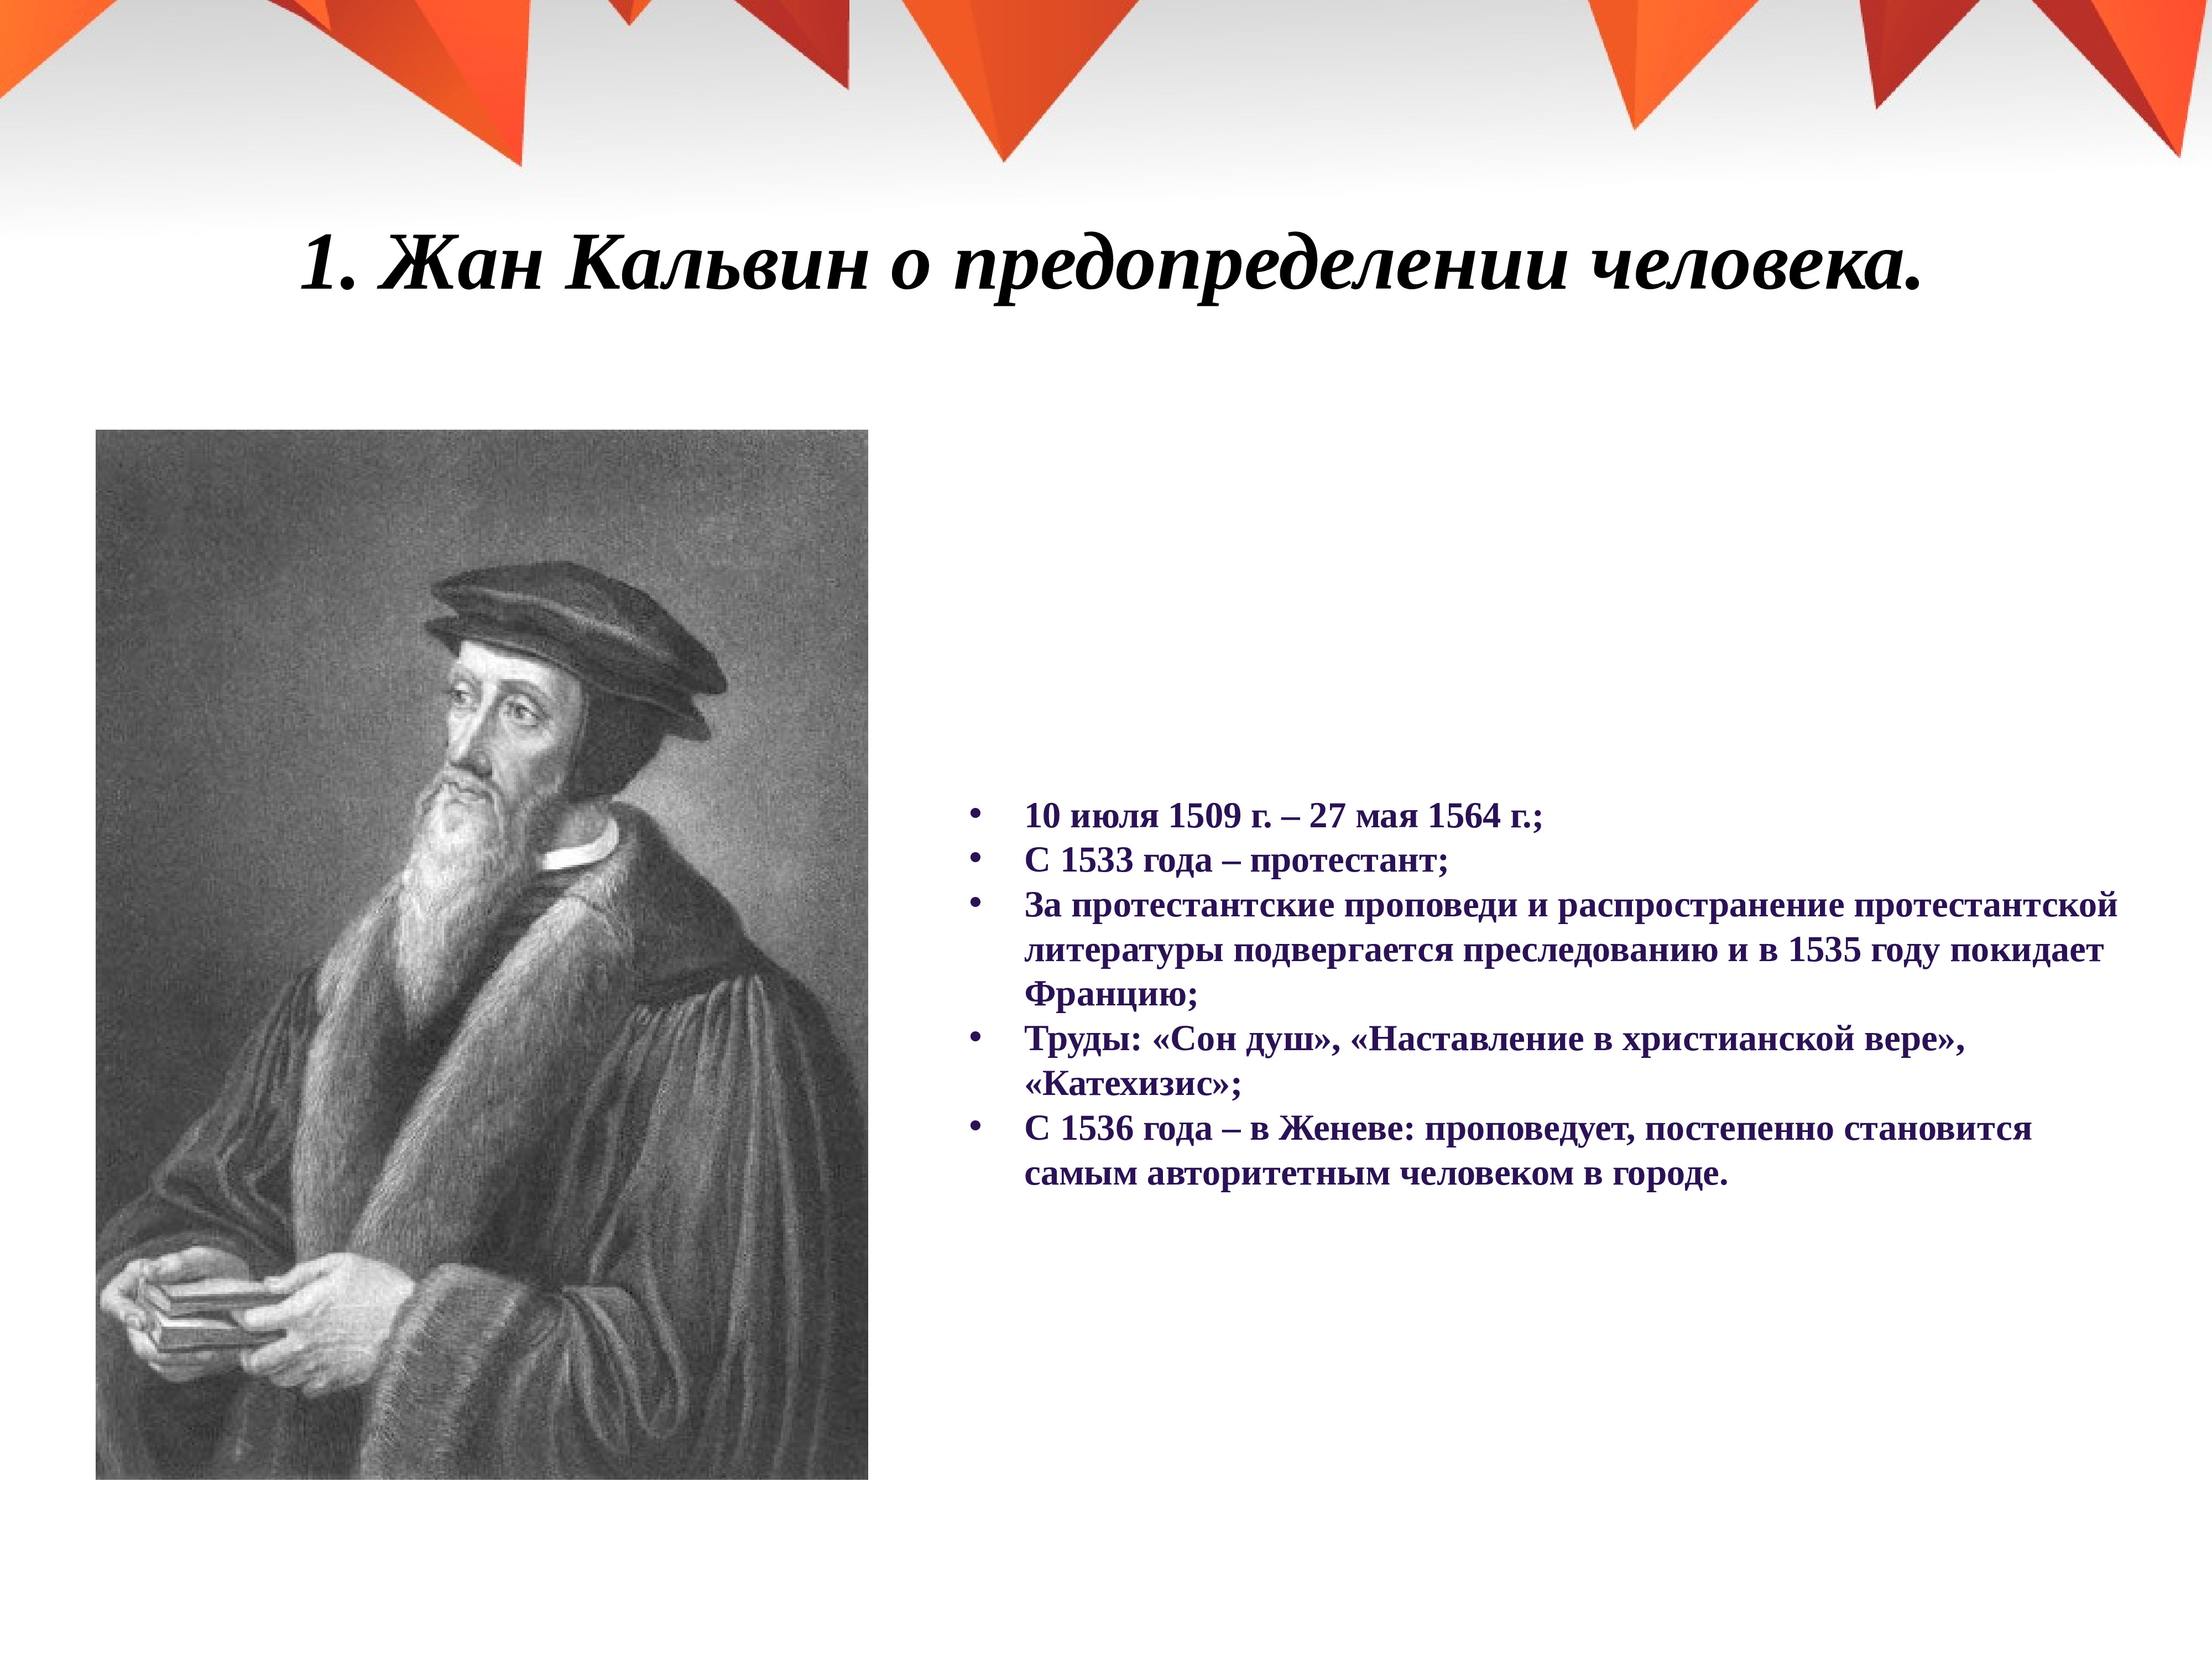 Реформация европе презентация. Жана Кальвина (1509-1564).. Реформация фан Кальвин.